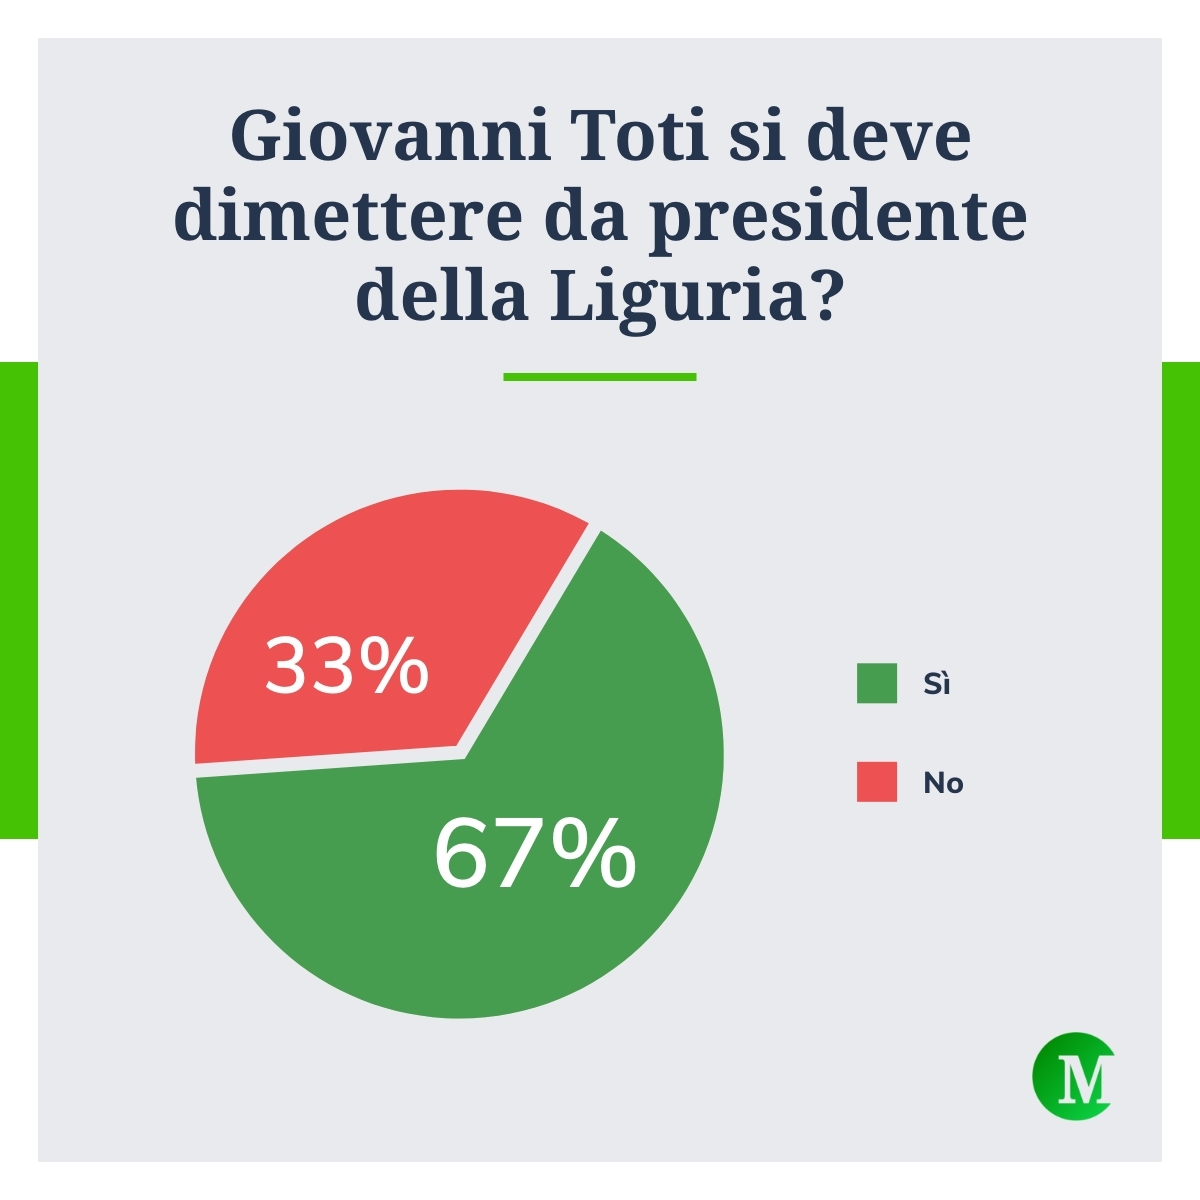 Per il 67% dei partecipanti al sondaggio di Money.it Giovanni #Toti deve dimettersi da presidente della #Liguria a causa dell’inchiesta che lo ha portato agli arresti domiciliari. Sei d'accordo? ➡️ Per approfondire: go.money.it/mImB